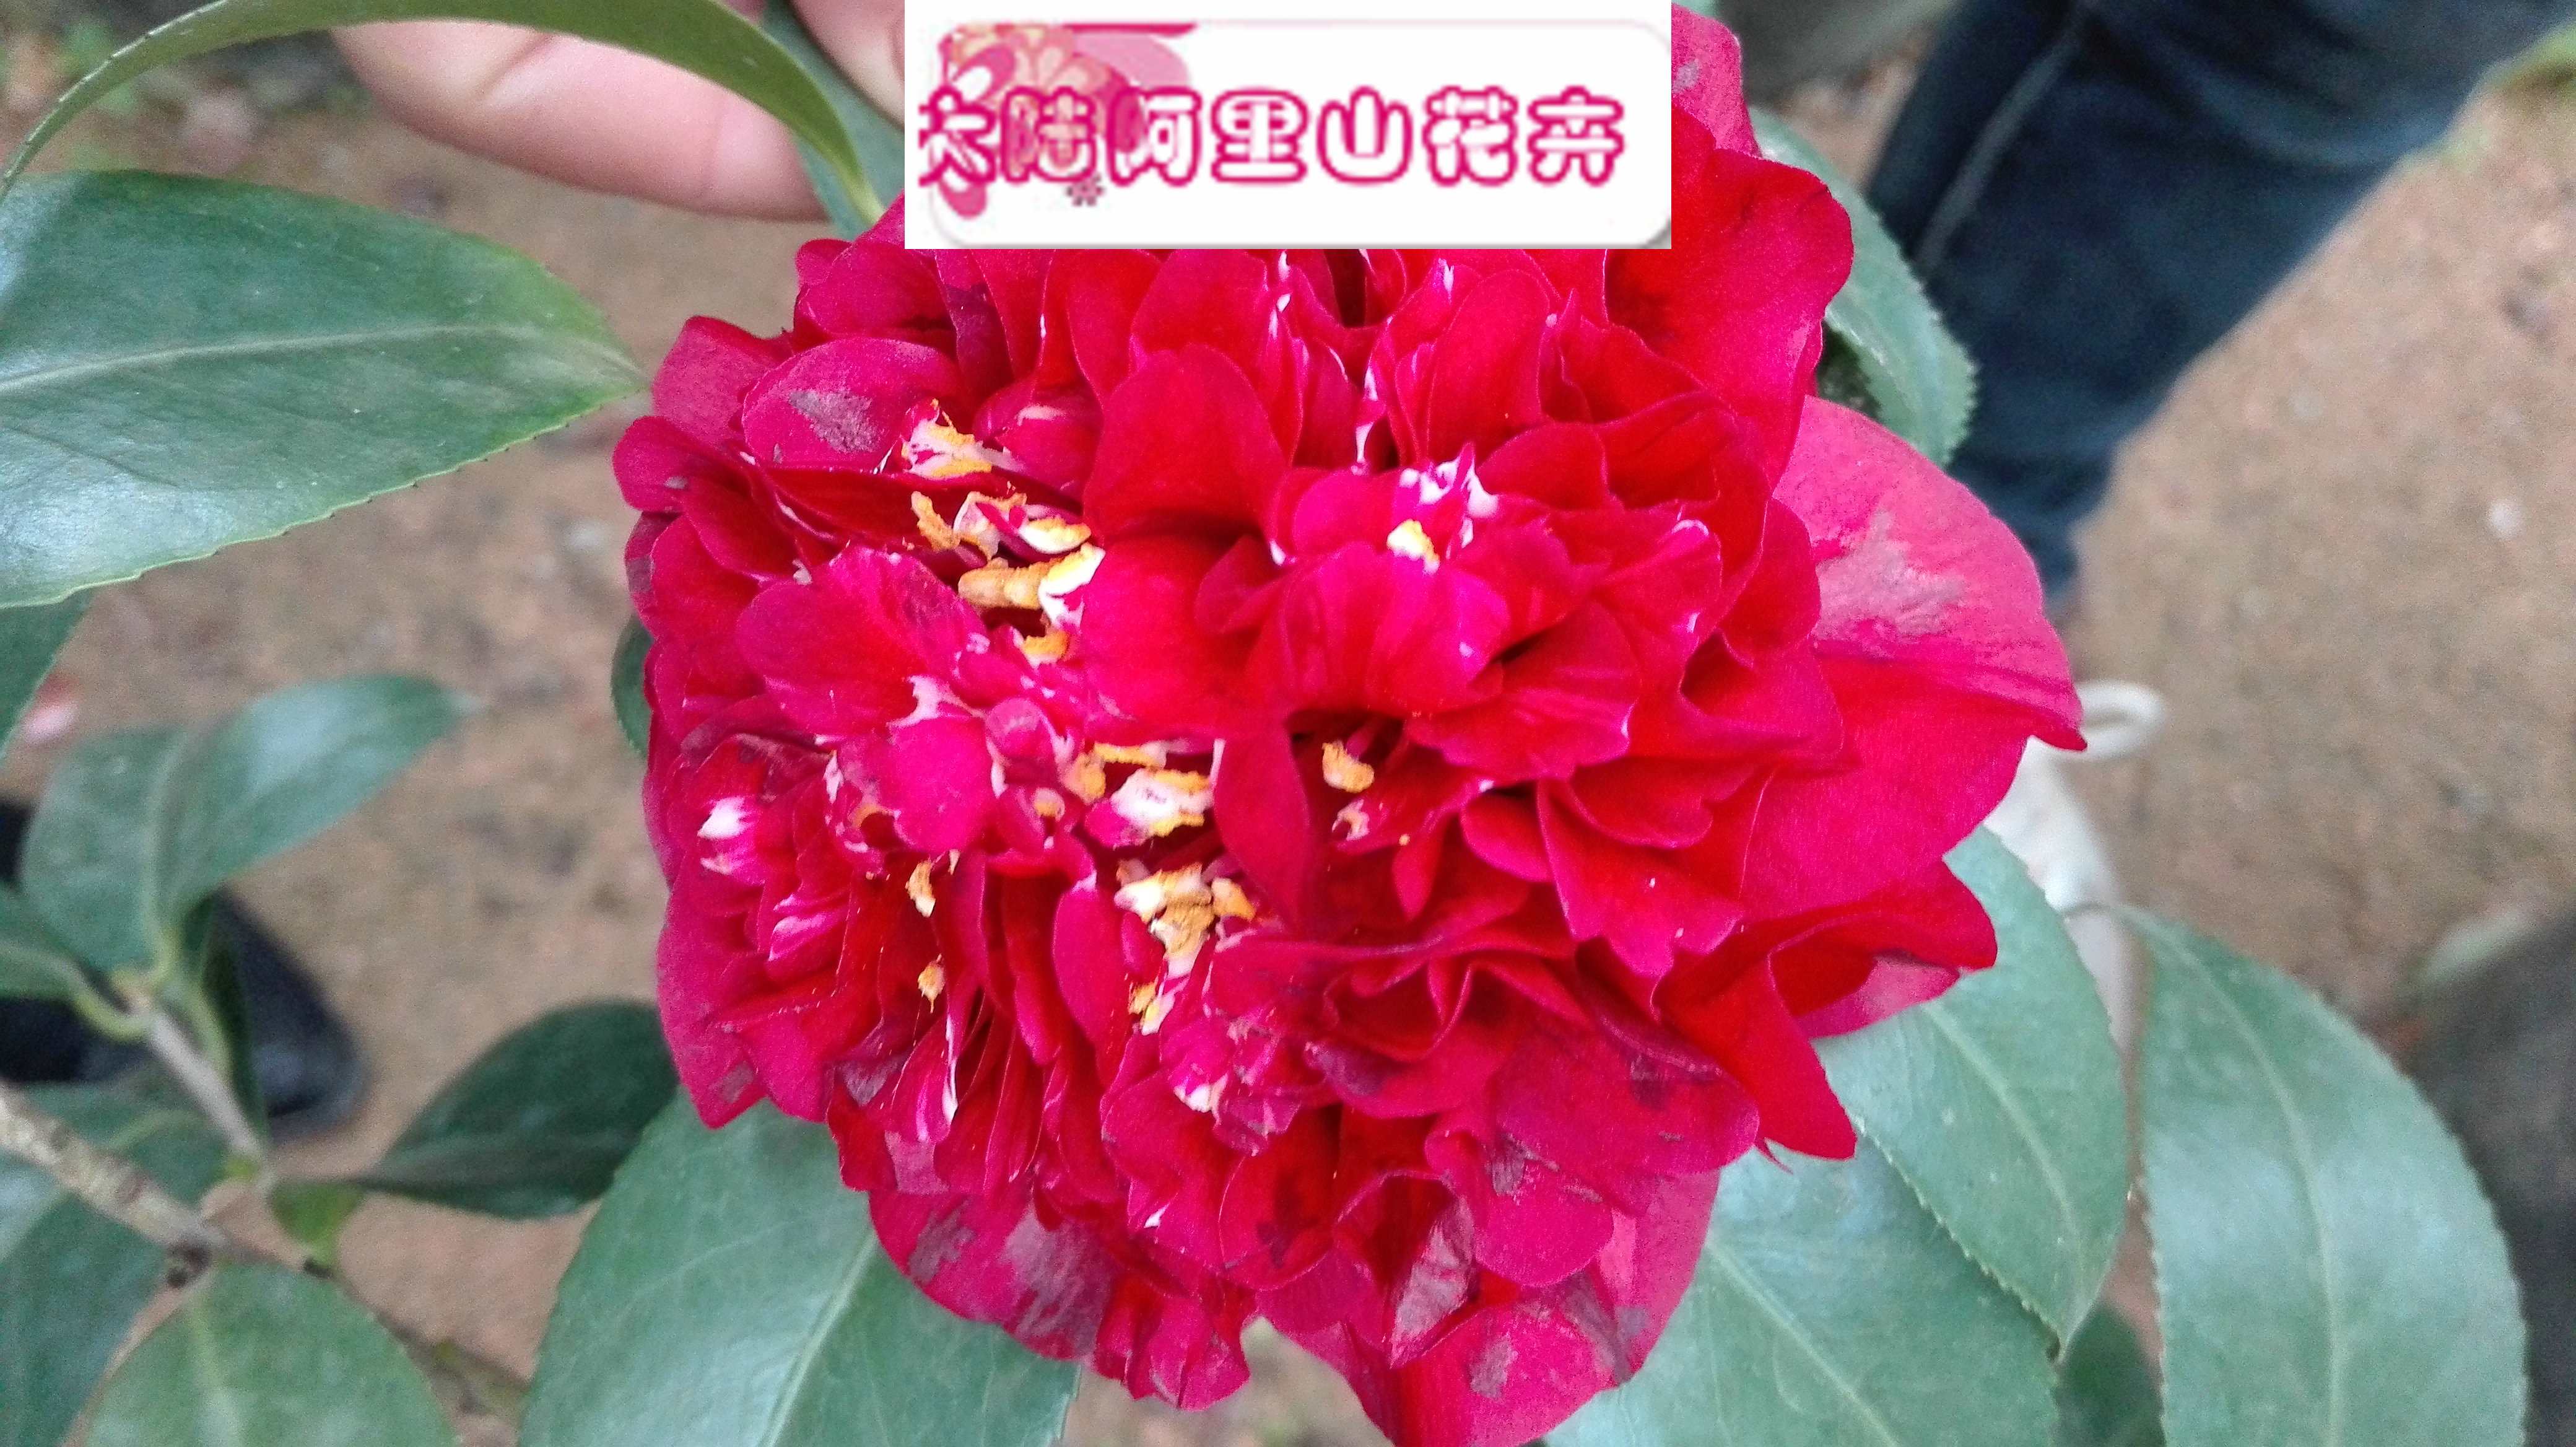 珍稀兰花将亮相北京植物园“鲜花庙会”-千龙网·中国首都网